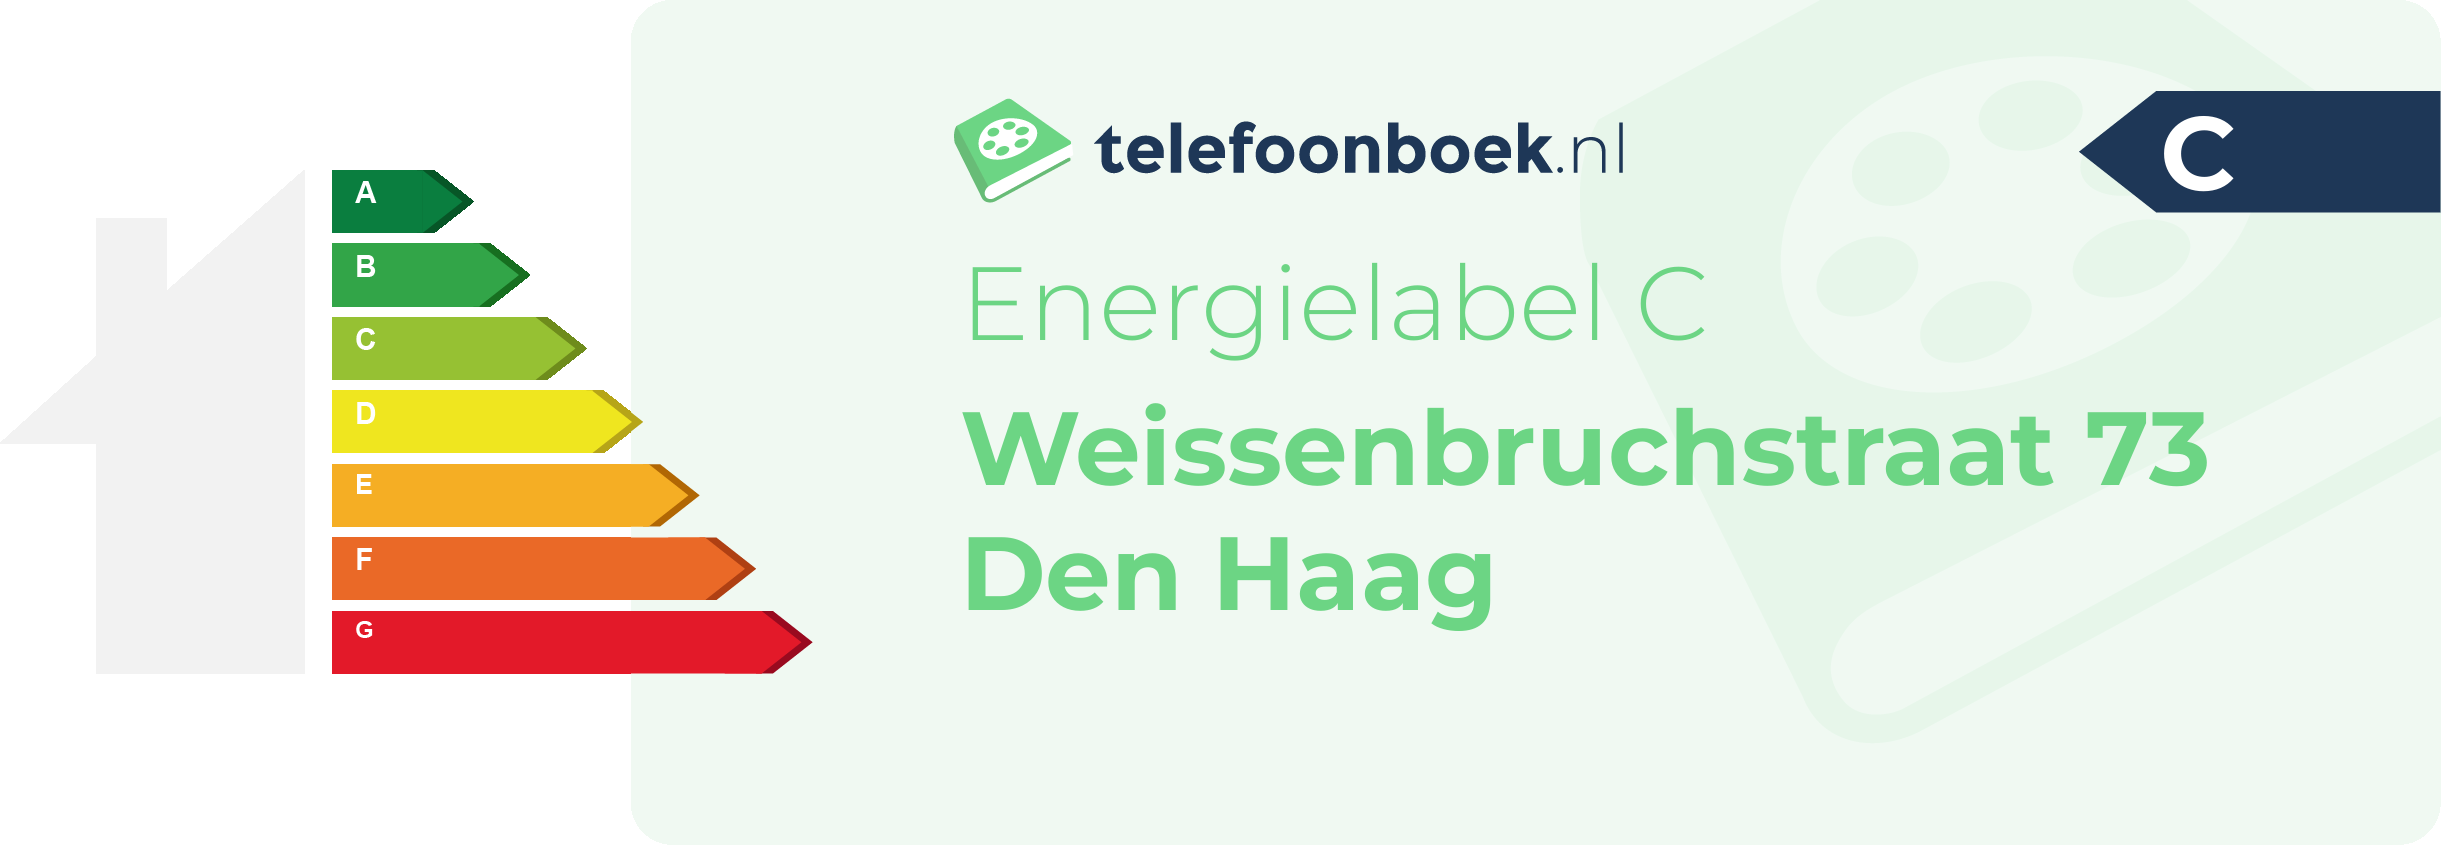 Energielabel Weissenbruchstraat 73 Den Haag